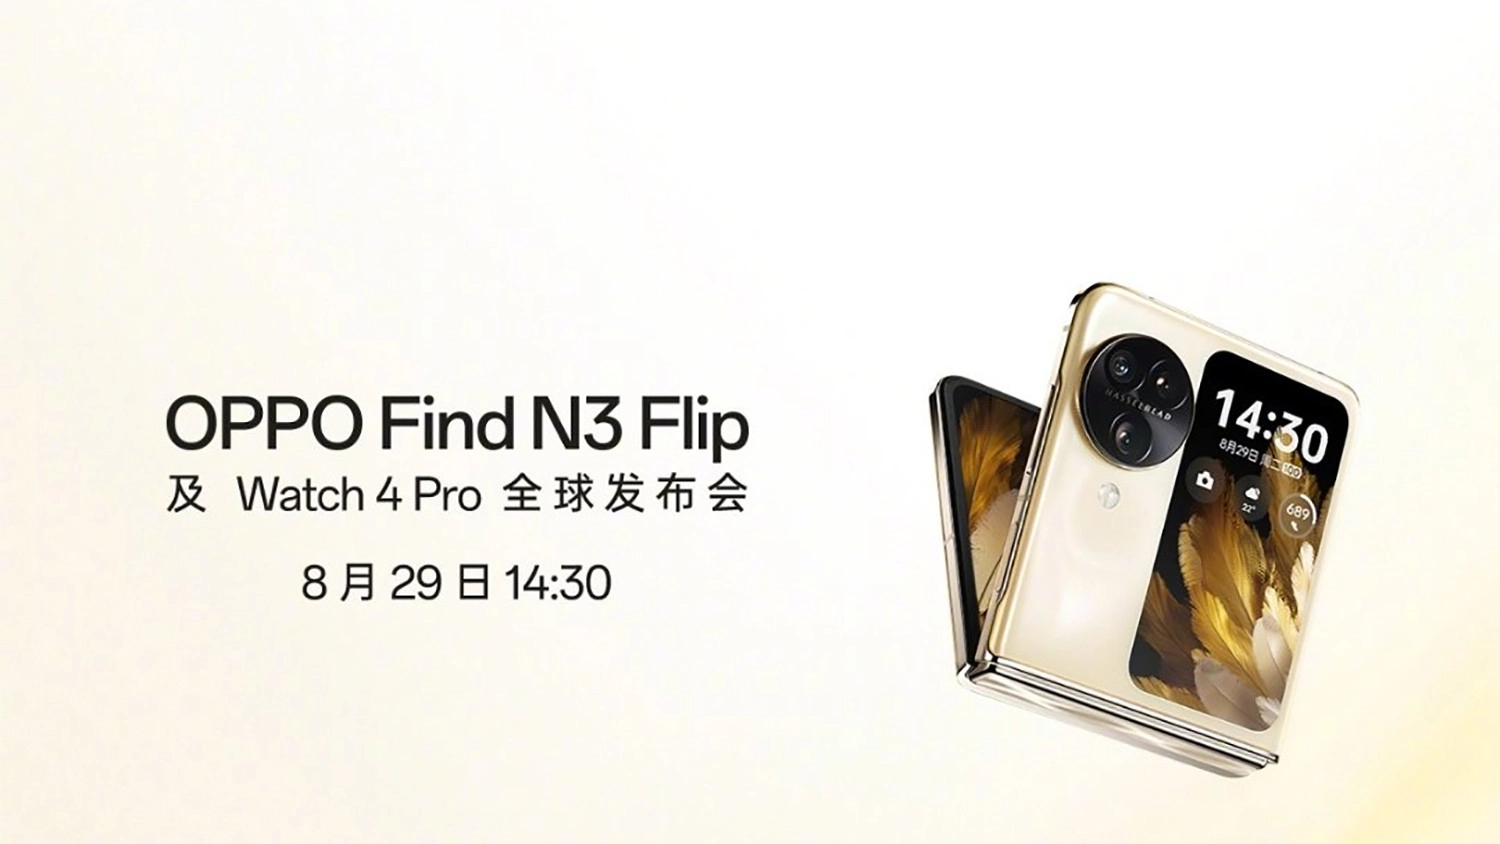 OPPO Find N3 Flip sẽ được ra mắt cùng Watch 4 Pro vào ngày 29/8 tới đây